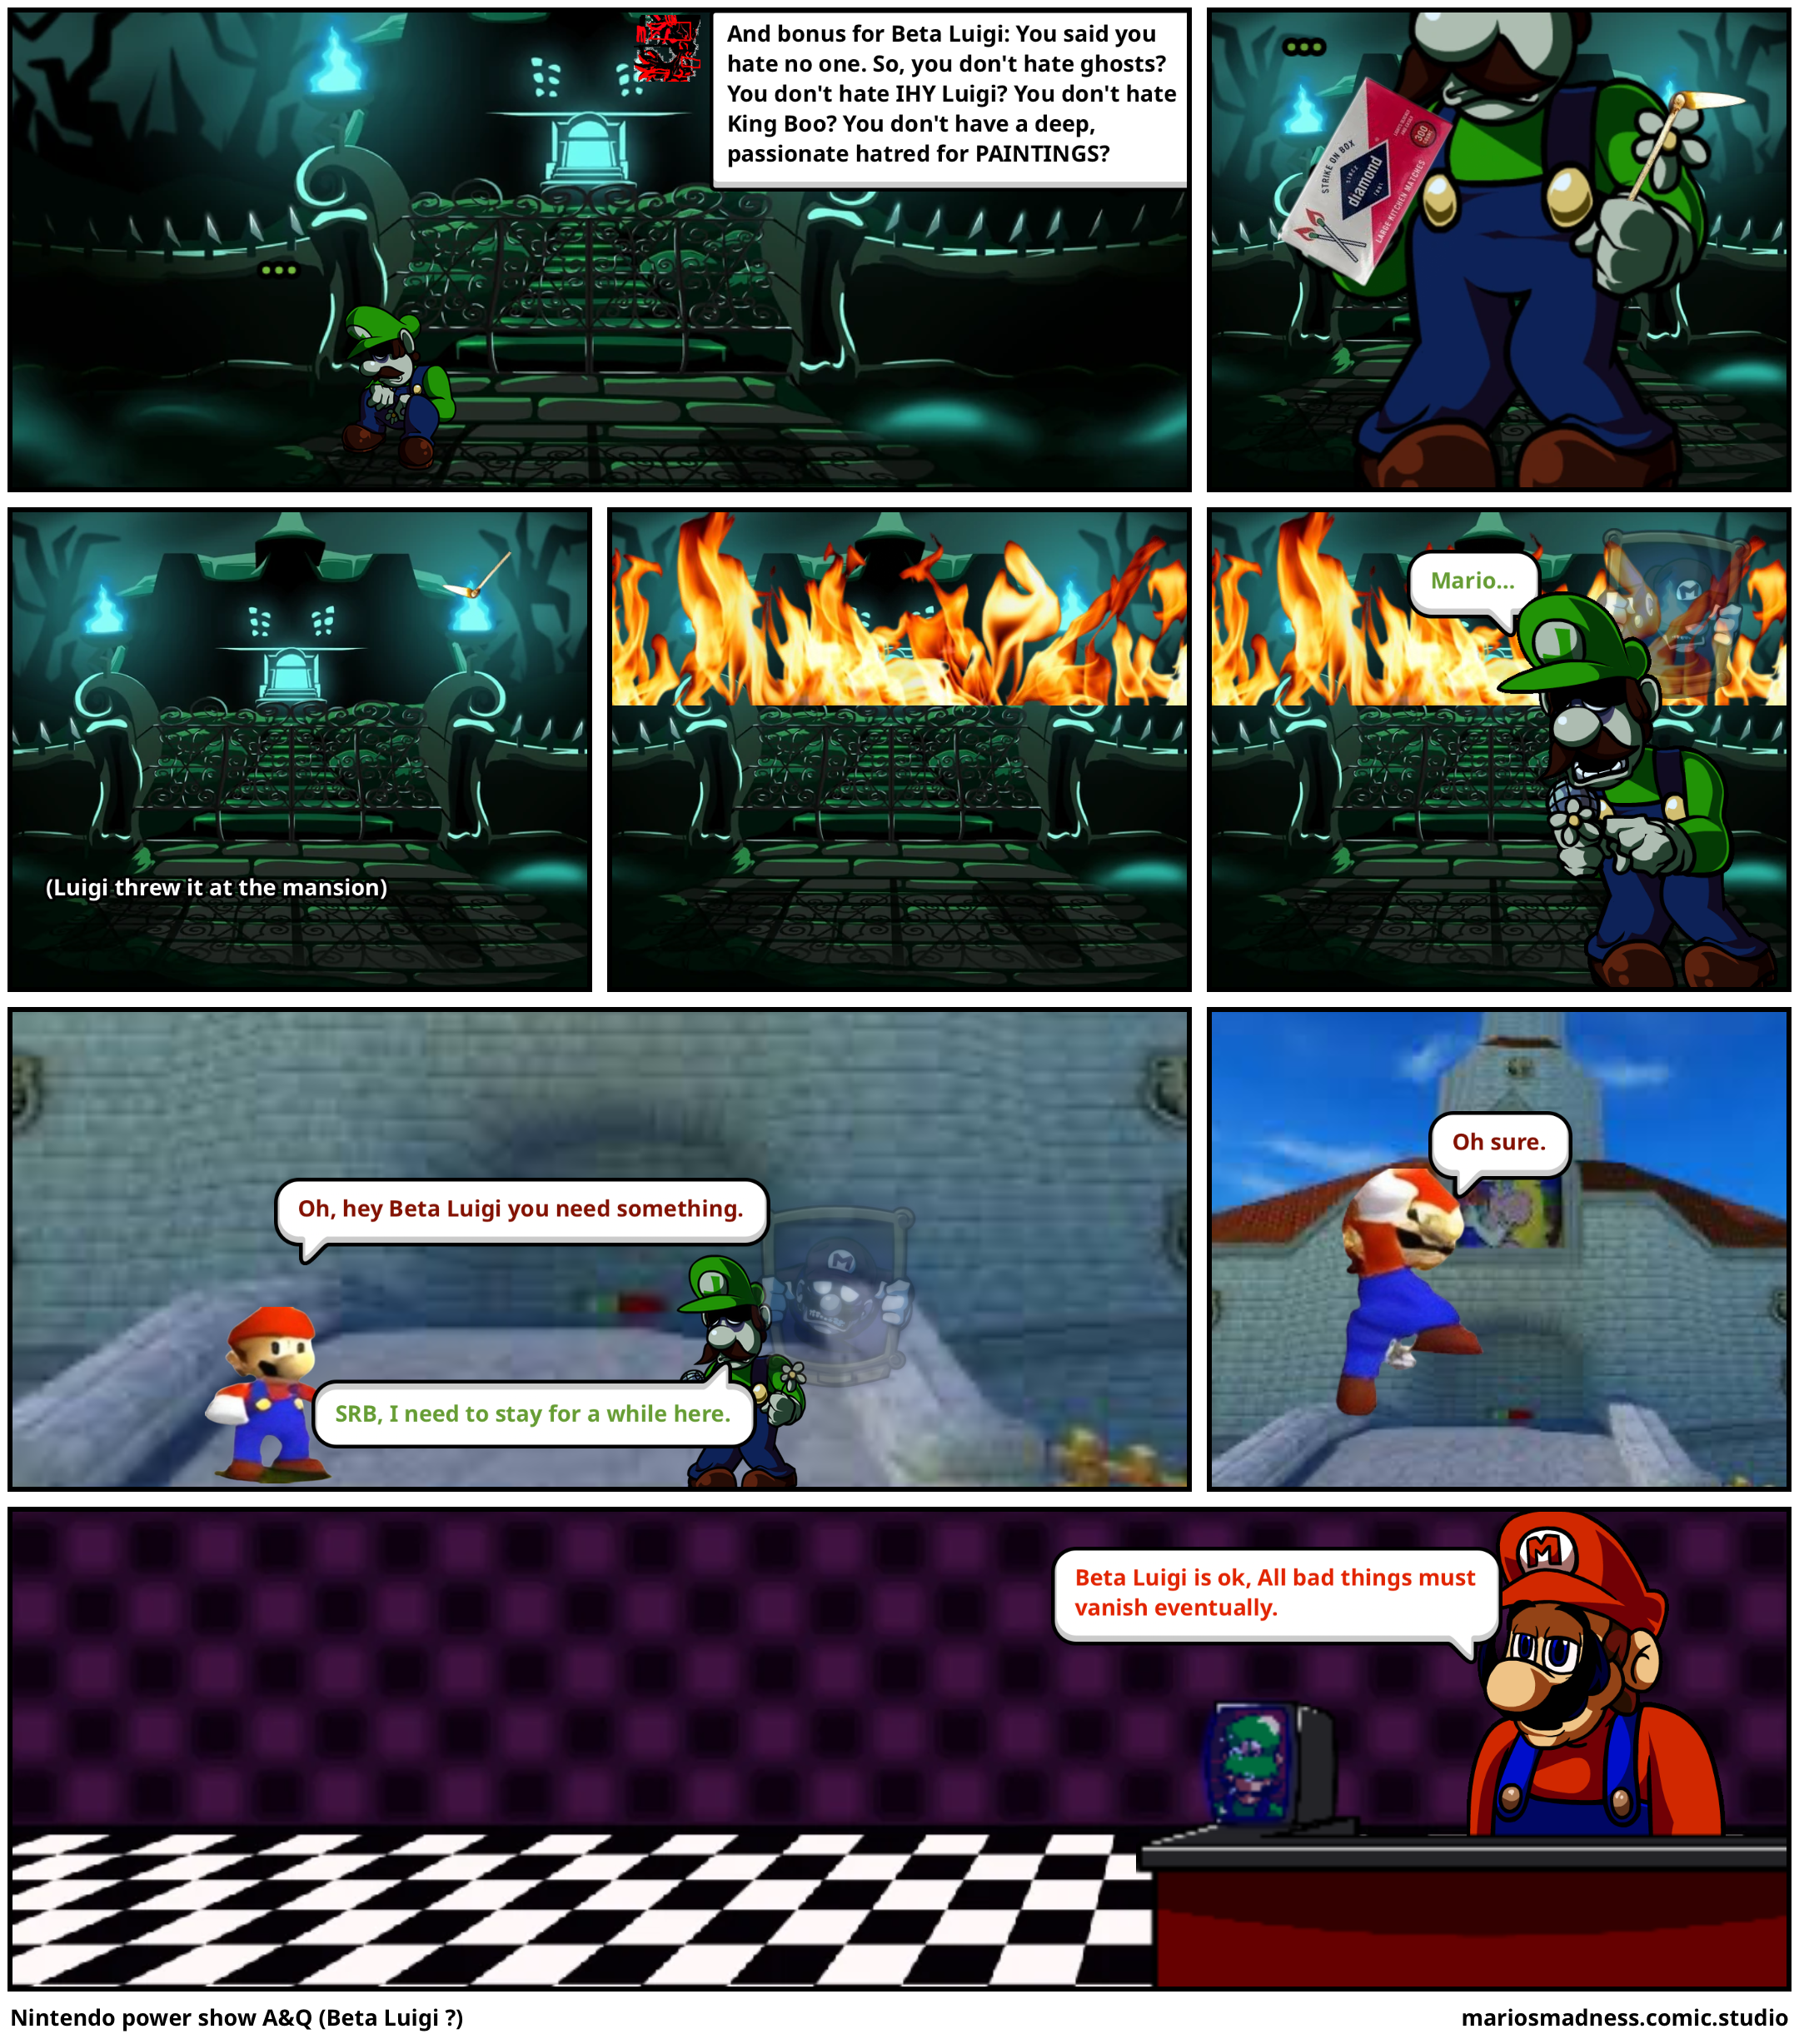 Nintendo power show A&Q (Beta Luigi ?)